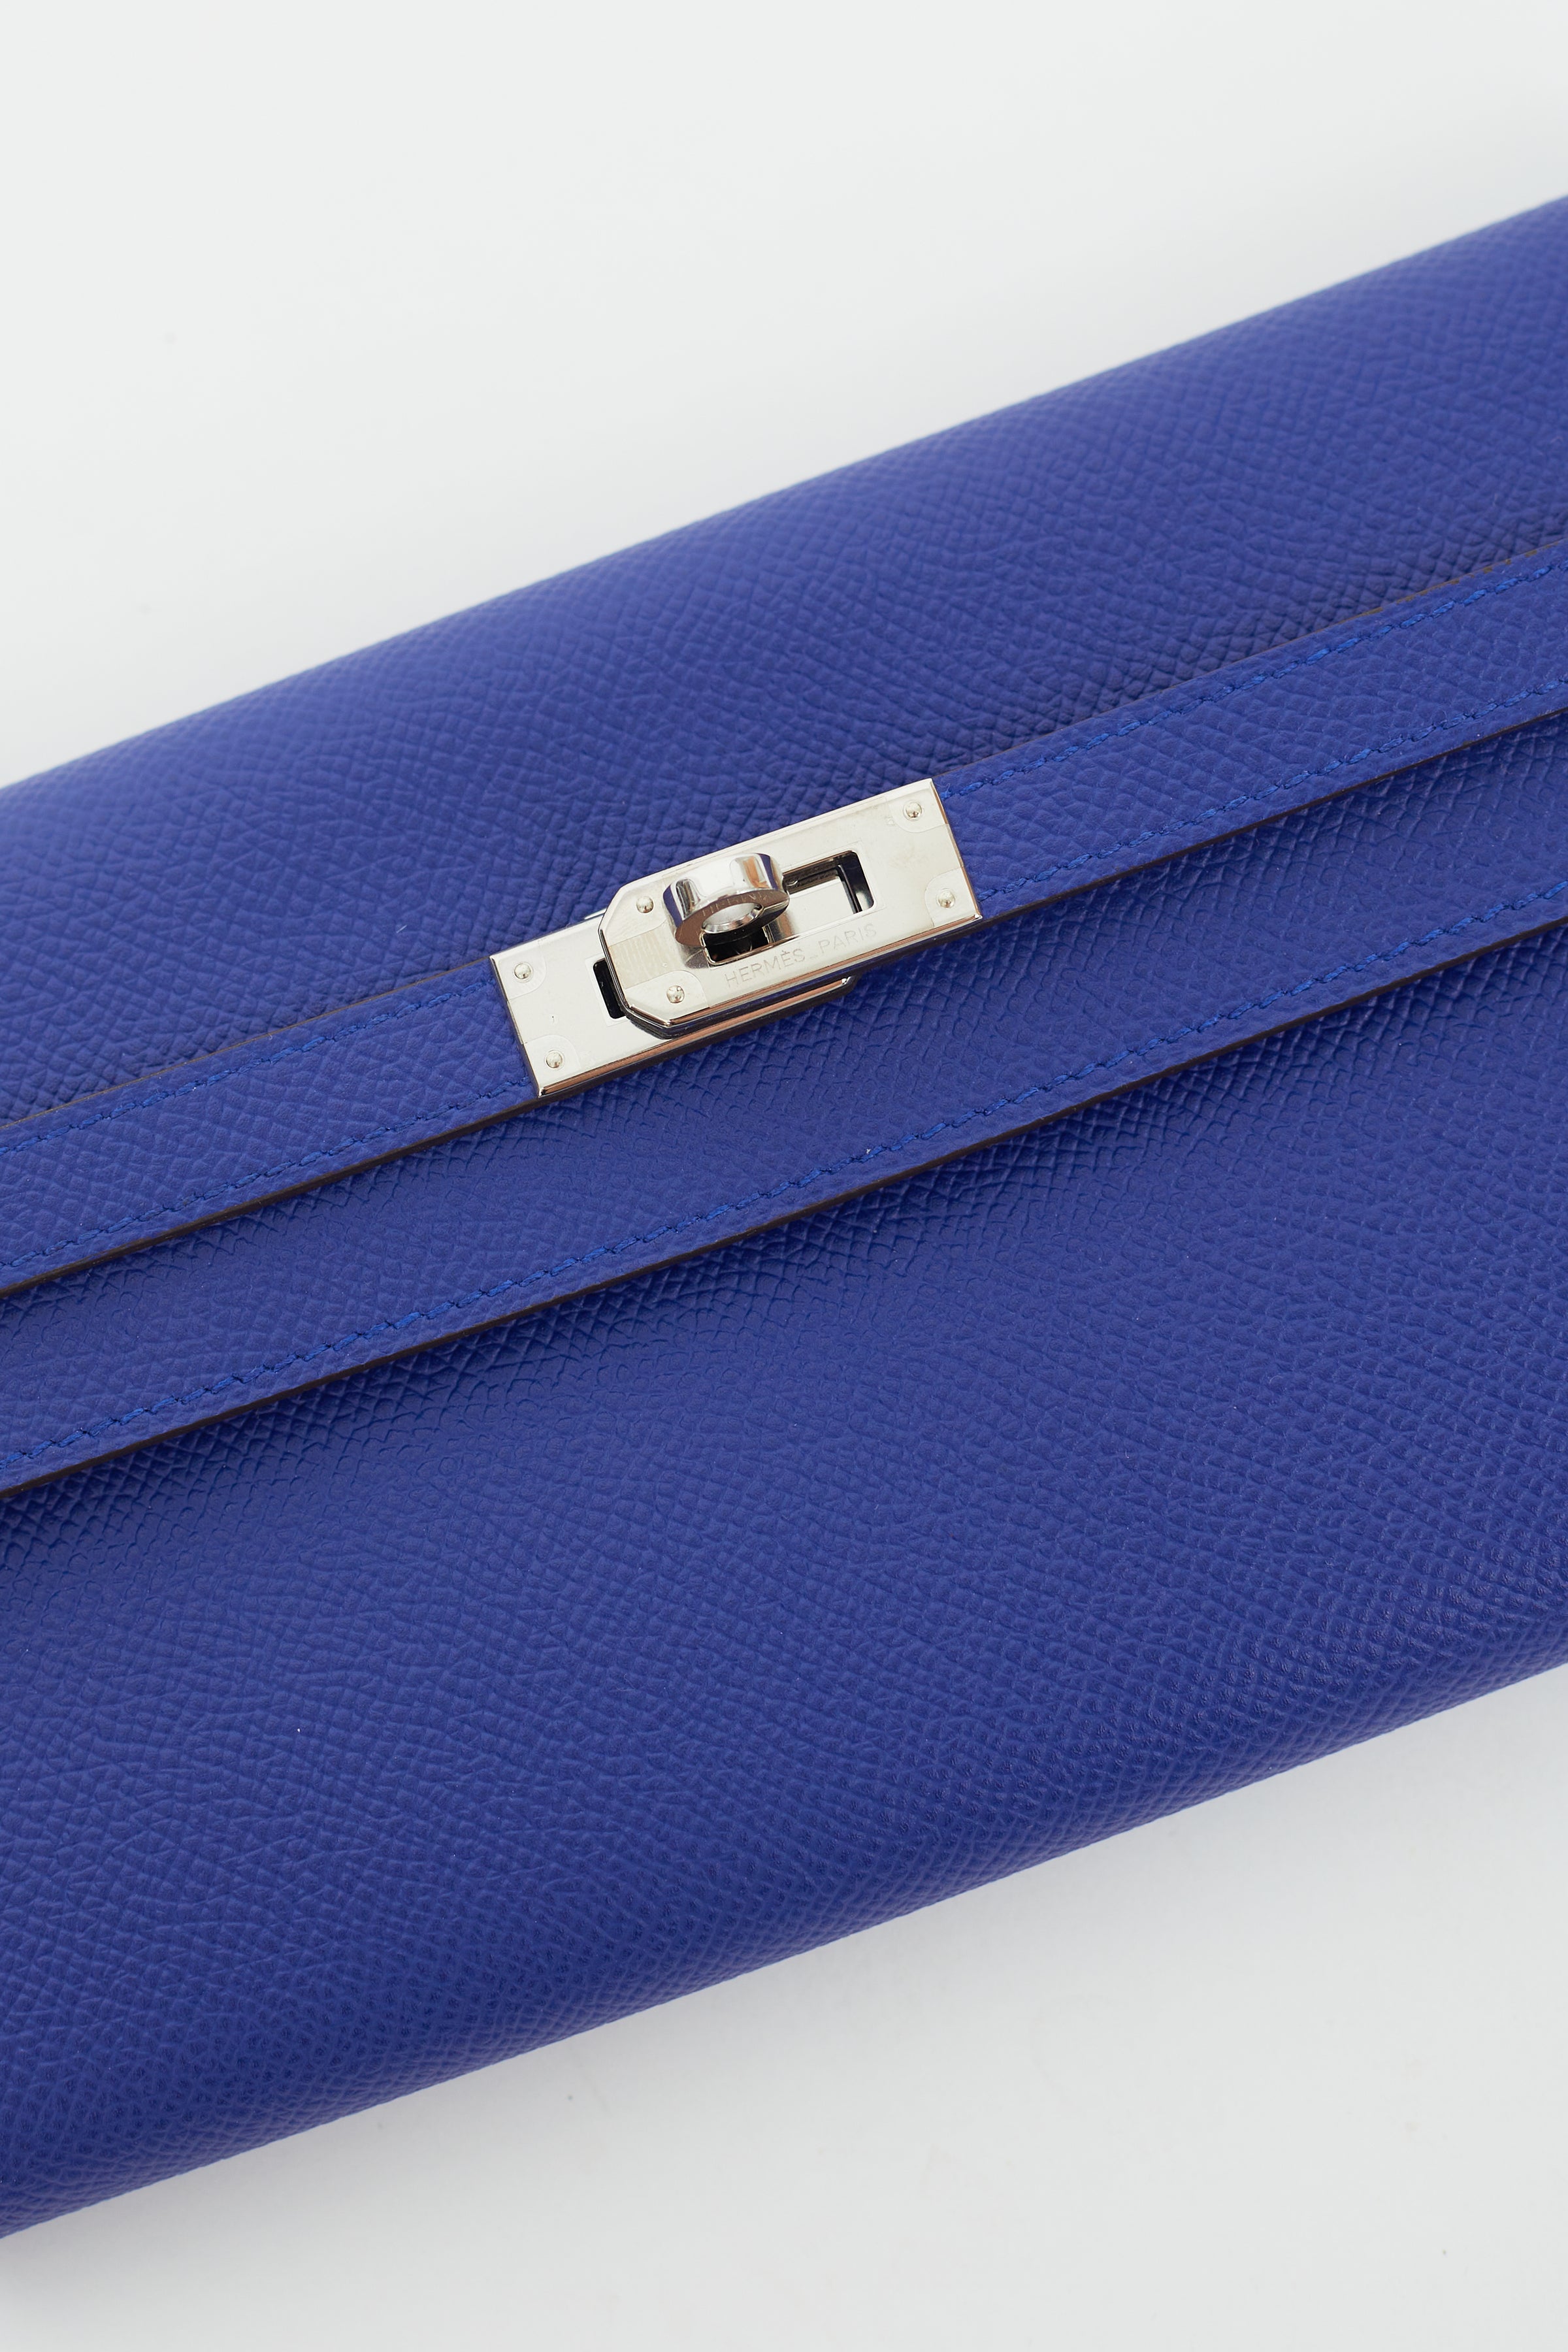 Hermès // 2016 Bleu Electrique Togo Kelly Long Wallet – VSP Consignment